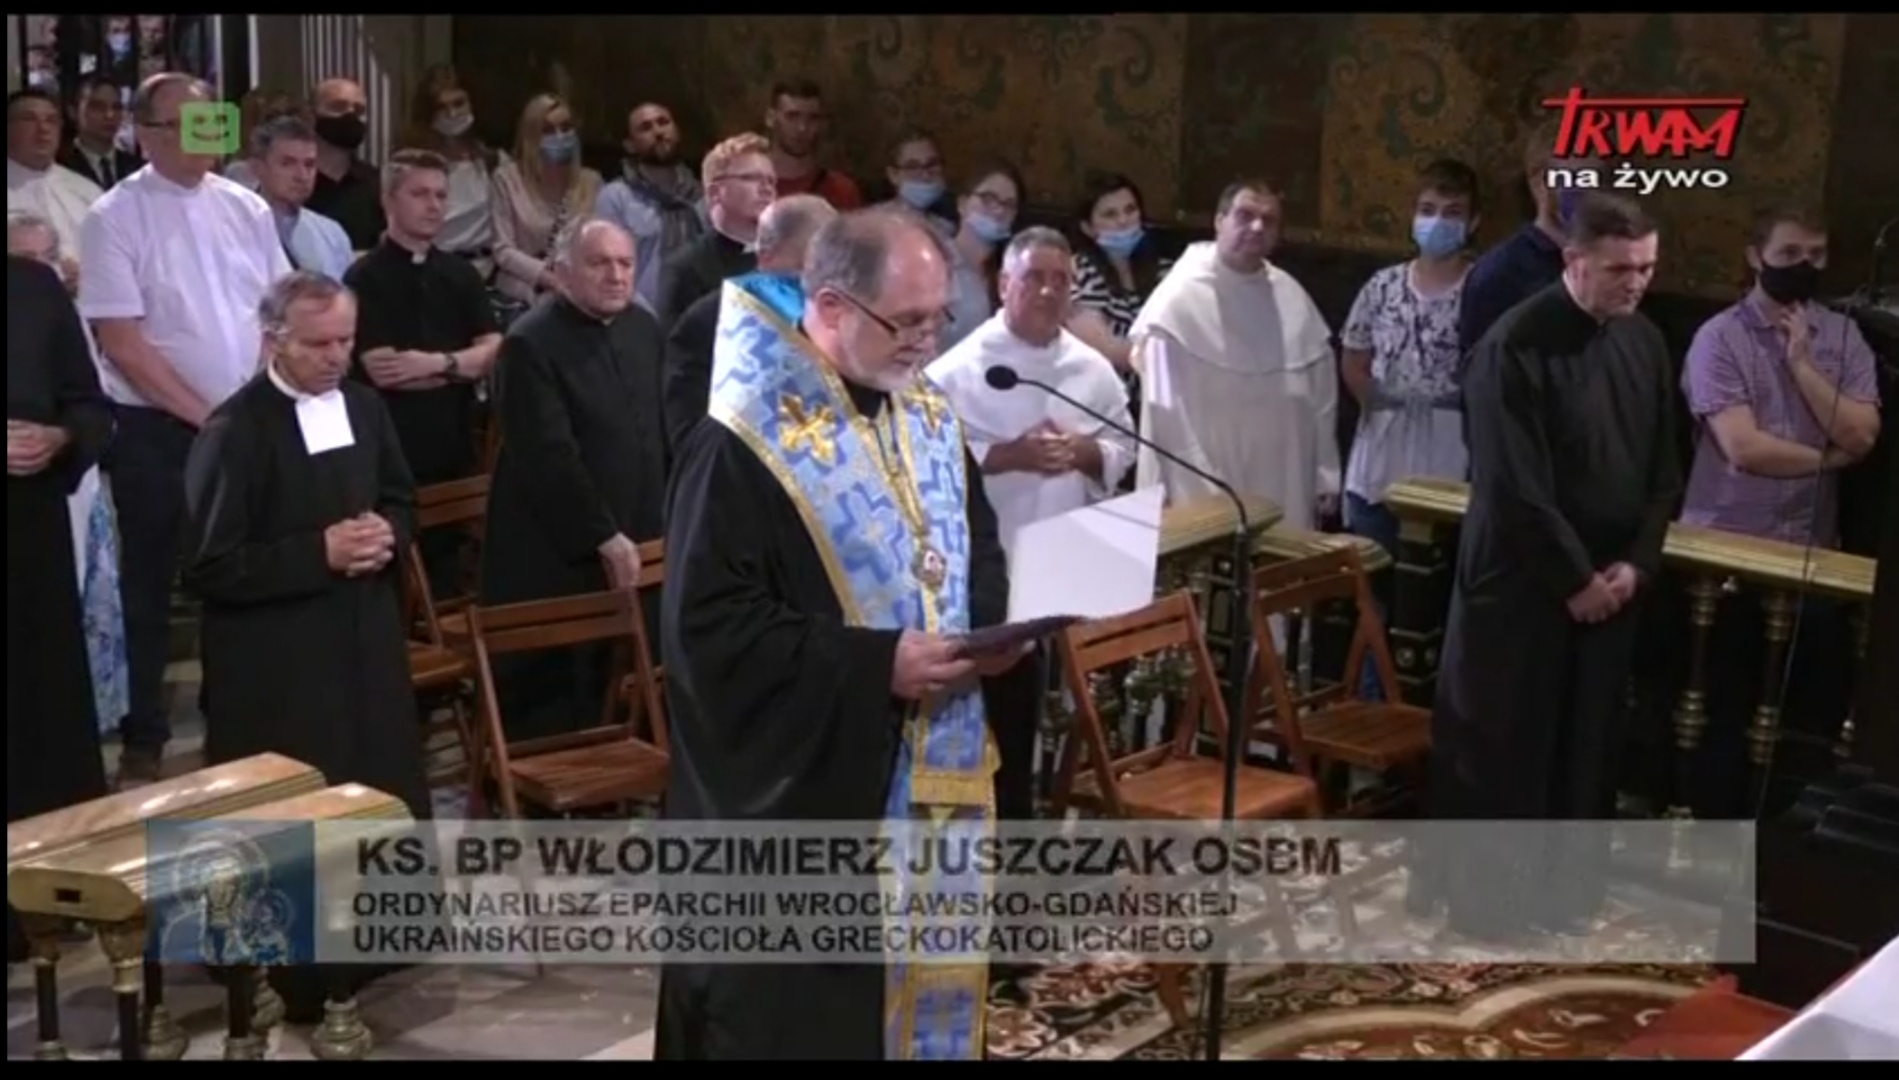 Rozważanie bpa Włodzimierza Juszczaka w czasie Apelu przed Ikoną Matki Boskiej Częstochowskiej, piątek 3.07.2020 r.